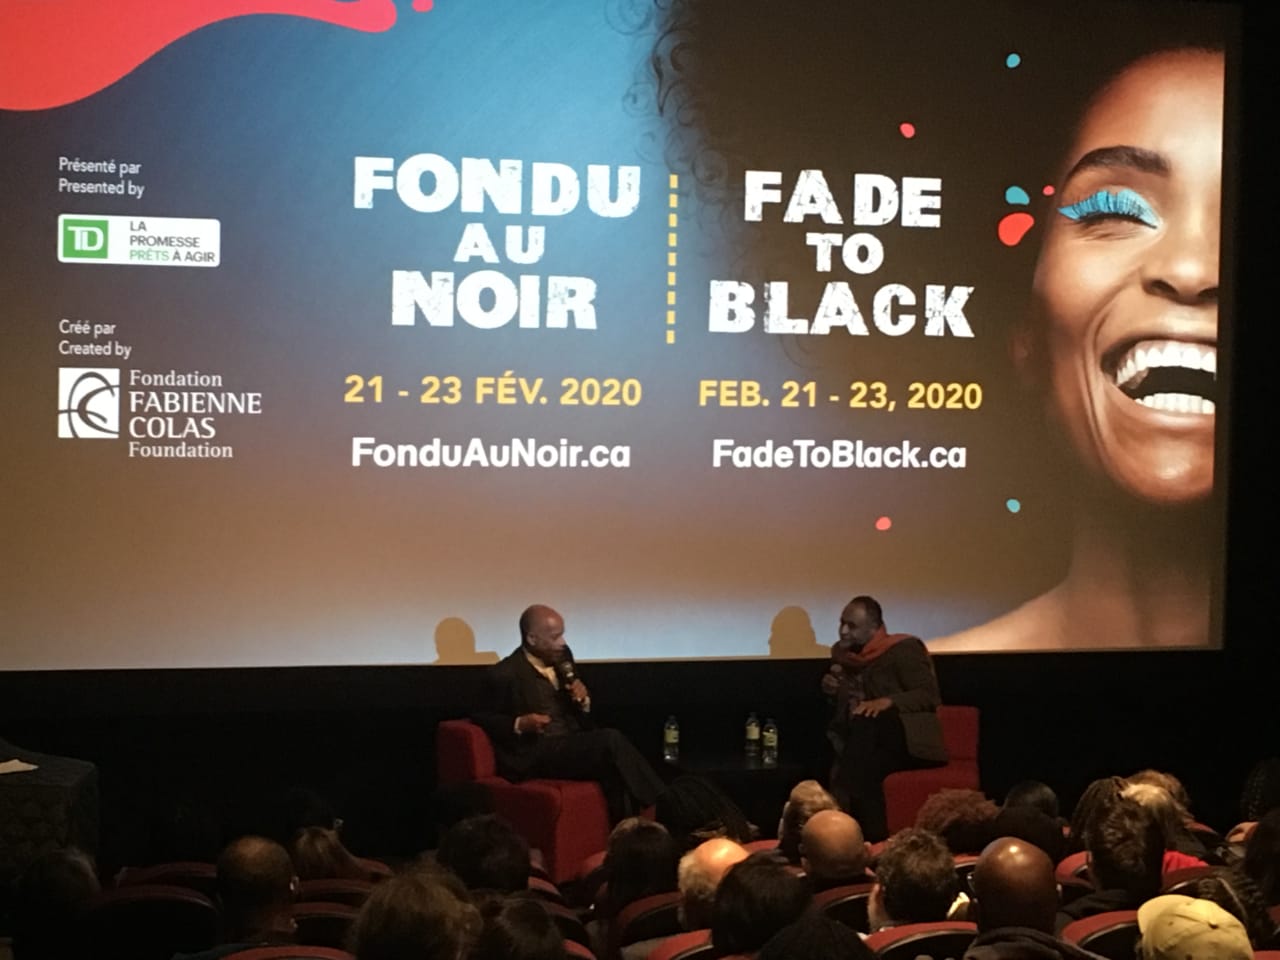     Le cinéma noir à l’honneur lors d’un festival à Montréal

